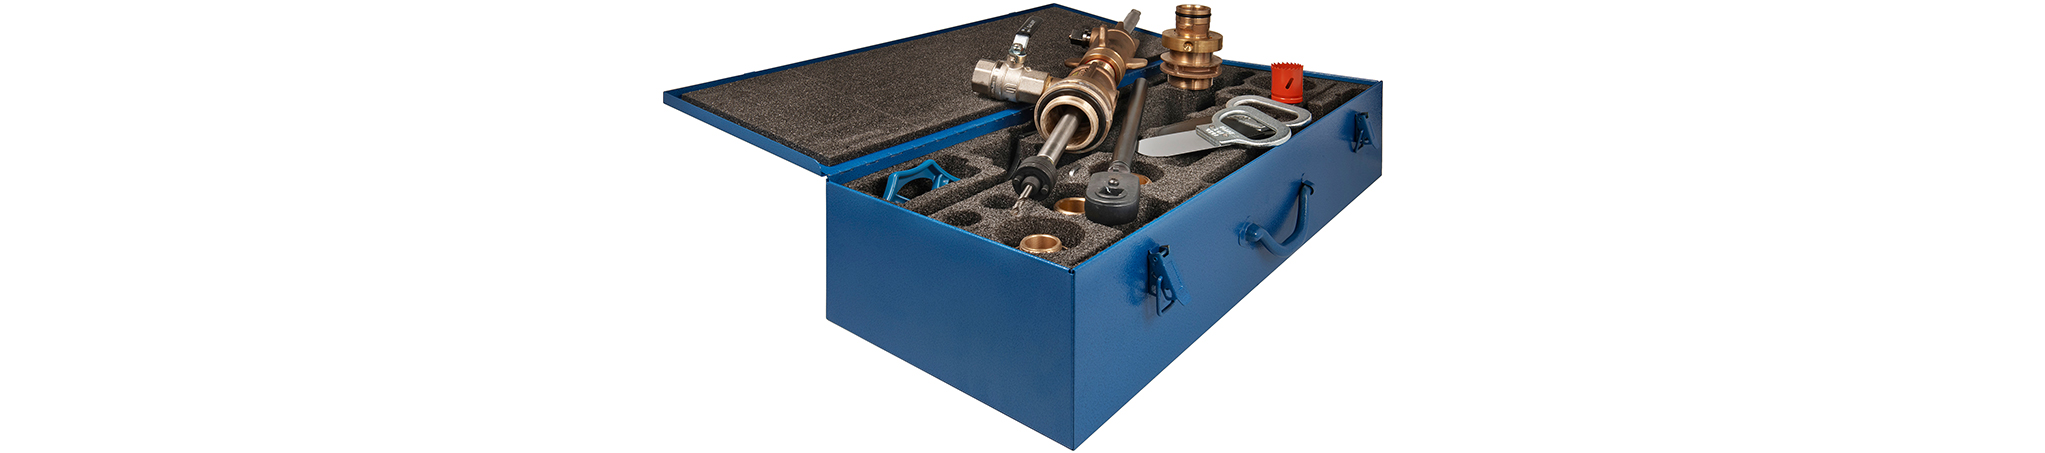 Abbildung eines Werkzeug- und Armaturenkoffers für den Wasser- und Gasleitungsbau als Bereichsbild der Seite "Speziallösungen" der Hawle Armaturen AG.